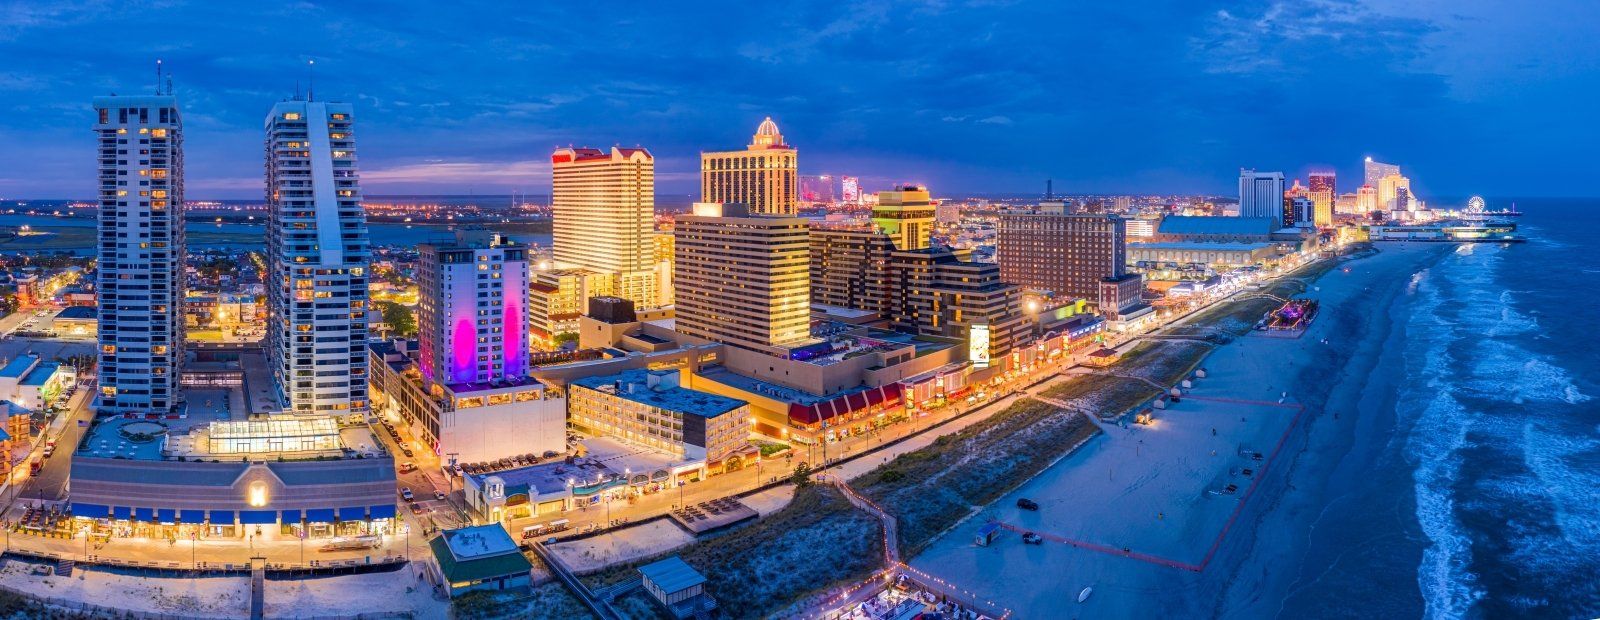 Atlantic City, aerial view at dusk